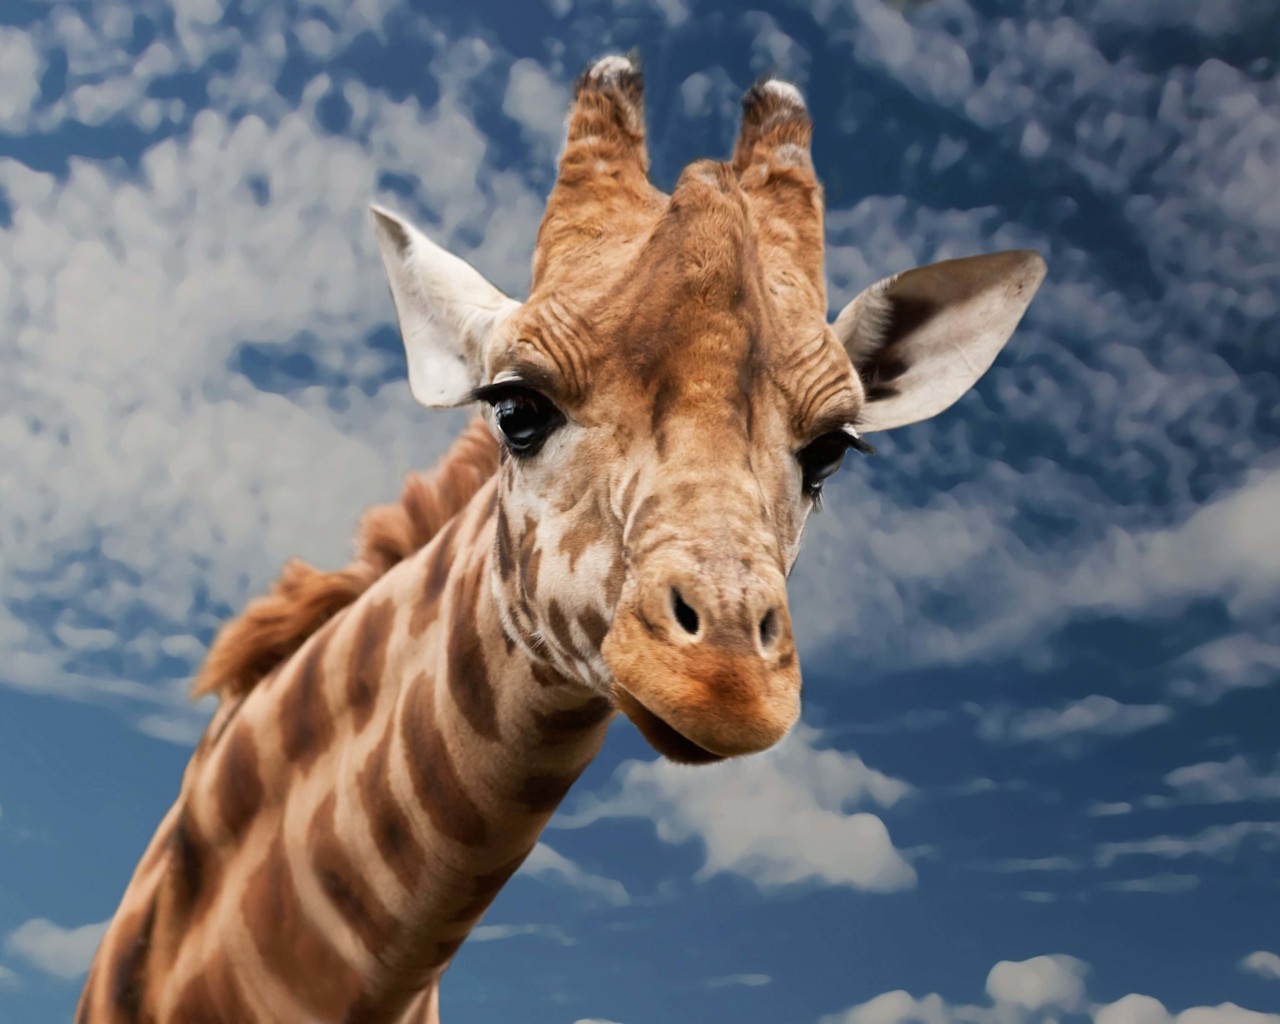 Funny Giraffe Wallpaper for Desktop 1280x1024